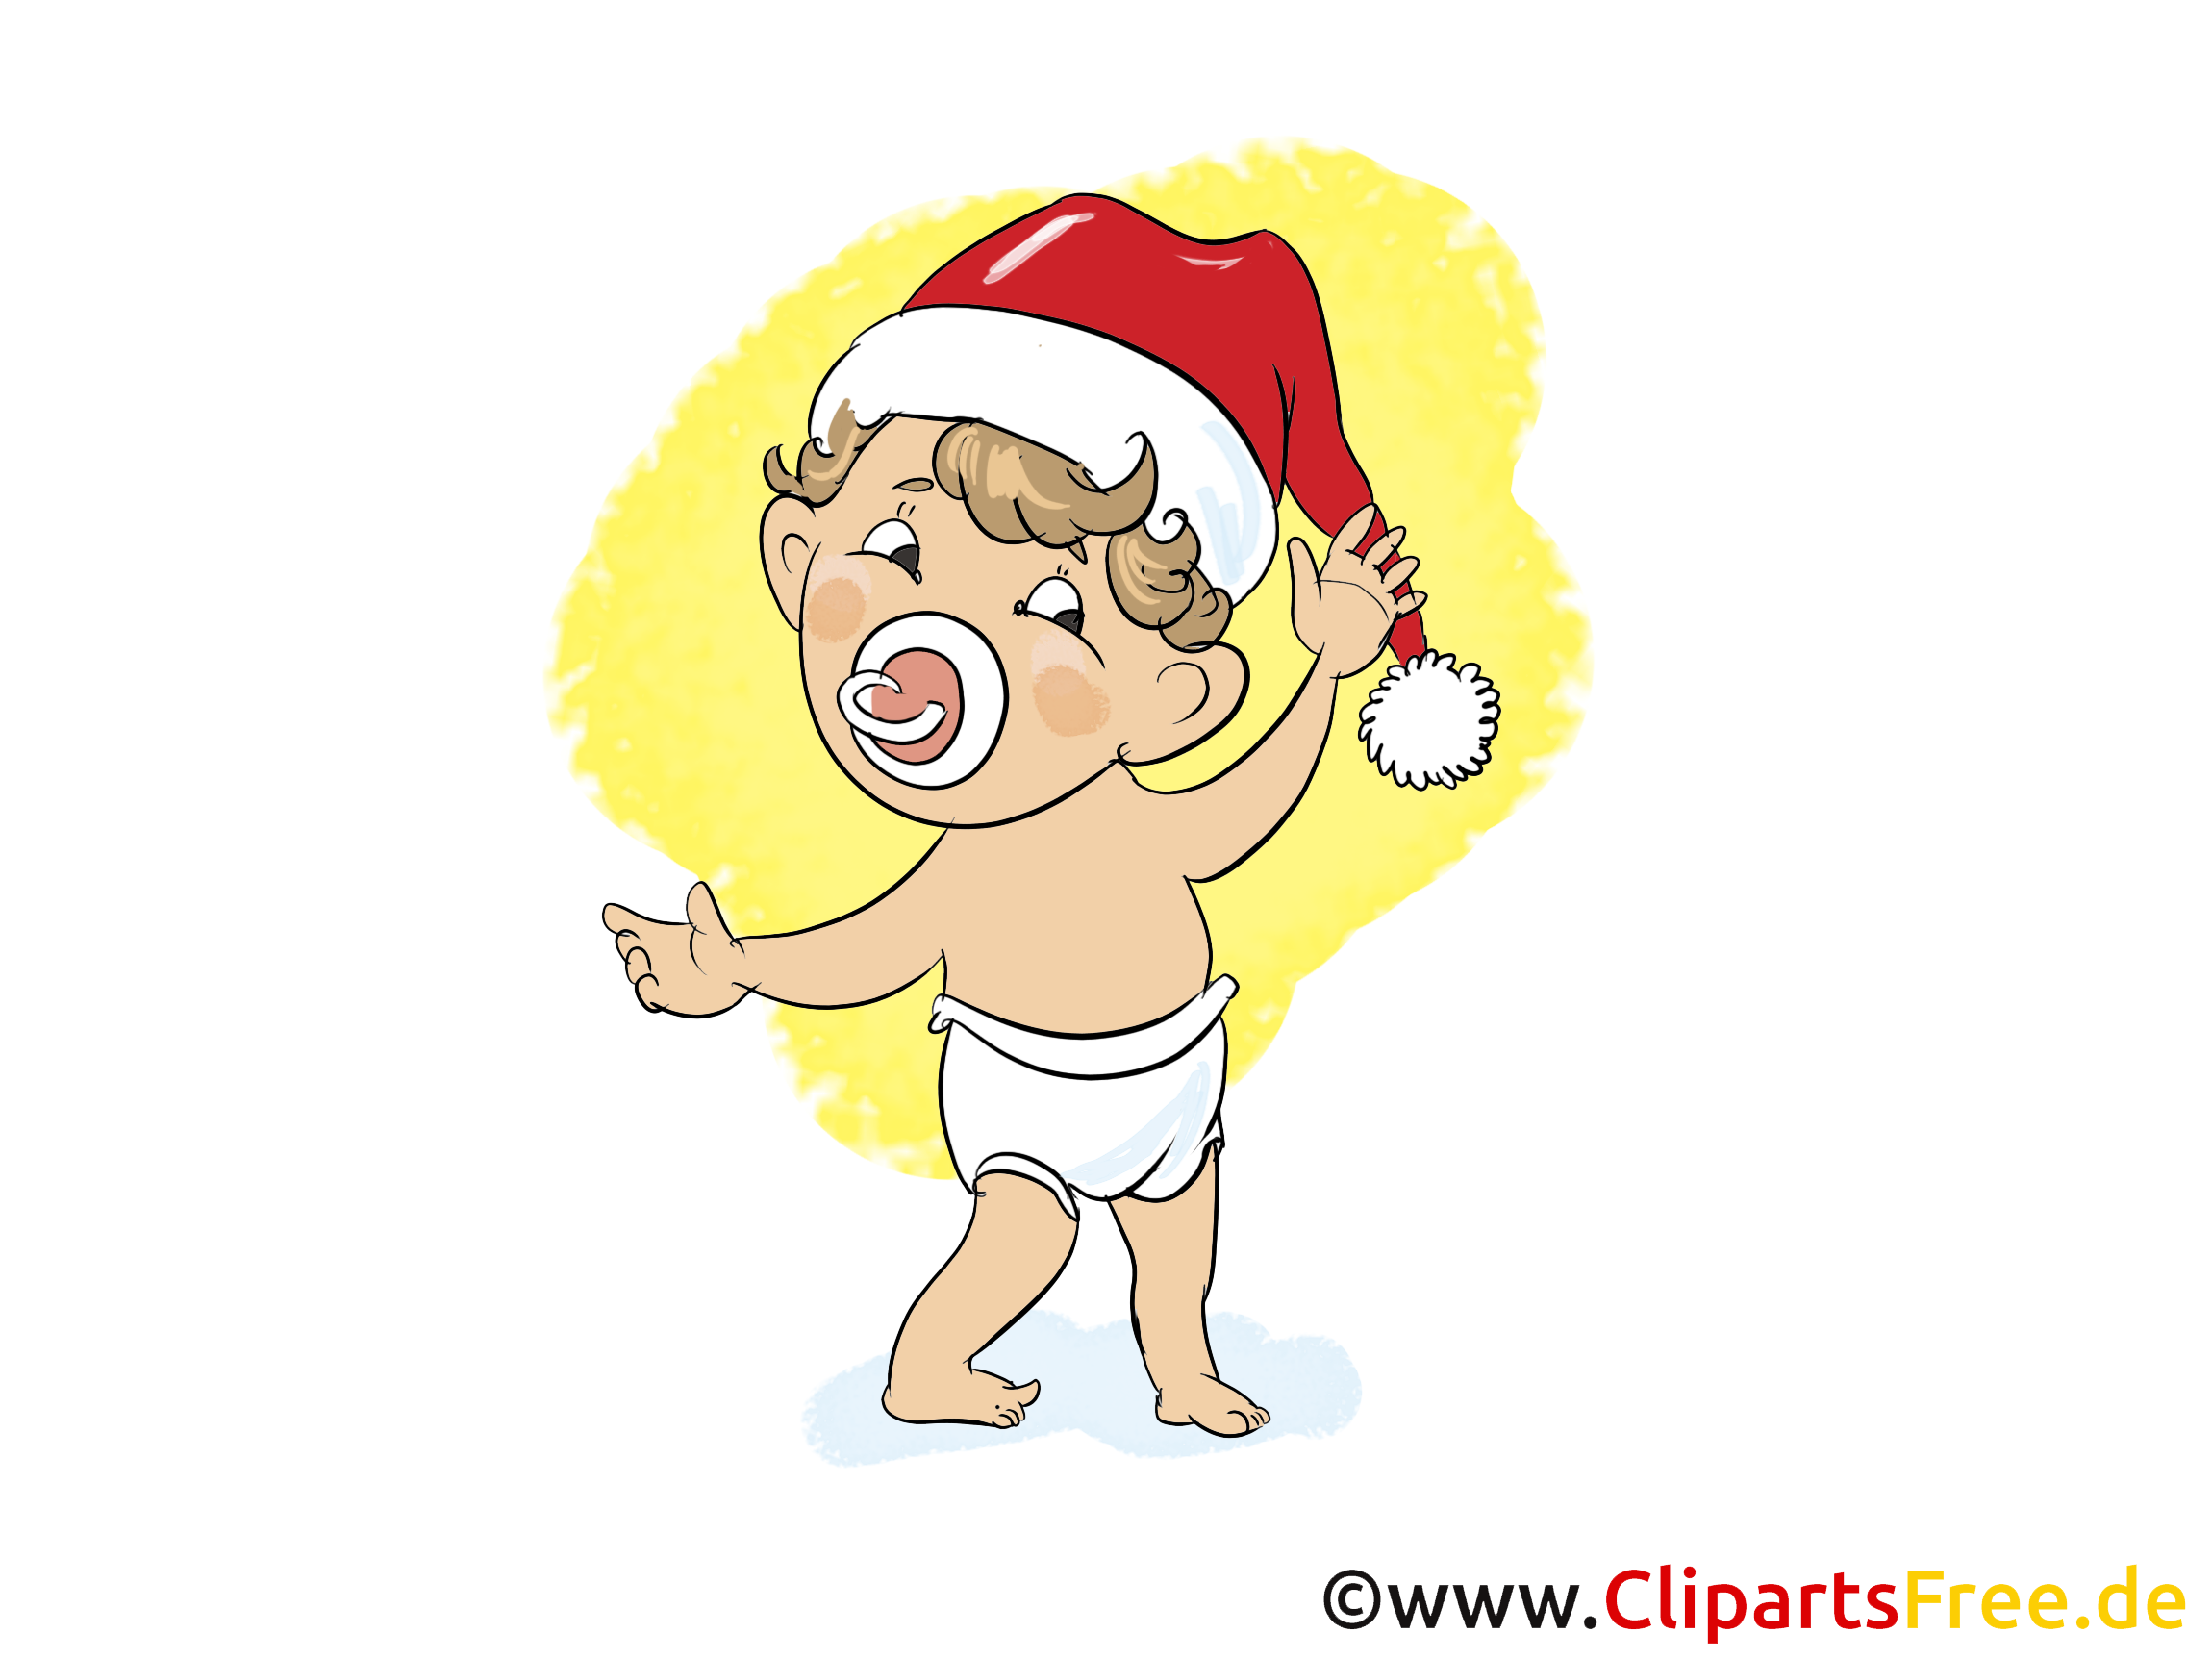 clipart weihnachten freeware - photo #20